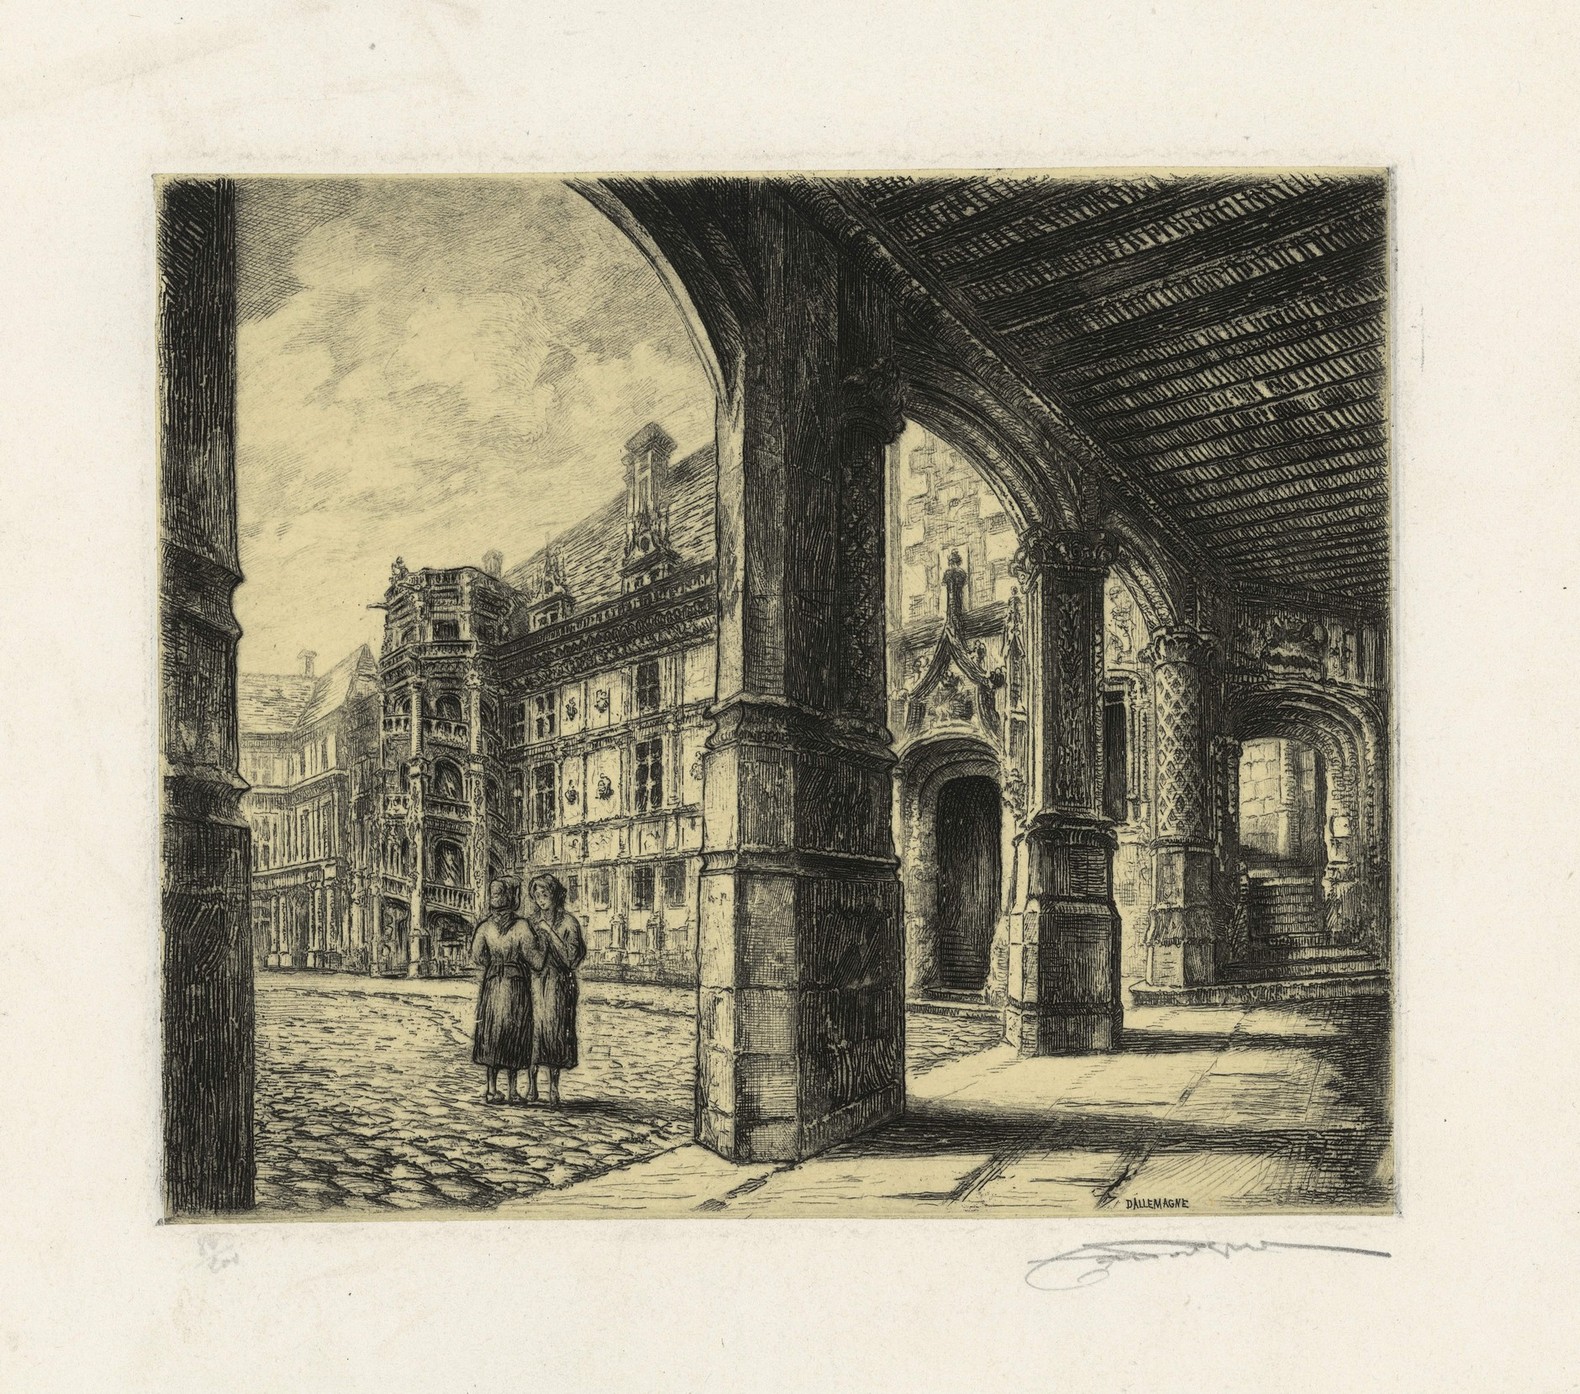 Henry Dallemagne, La galerie Louis XII au château de Blois, eau forte vers 1925